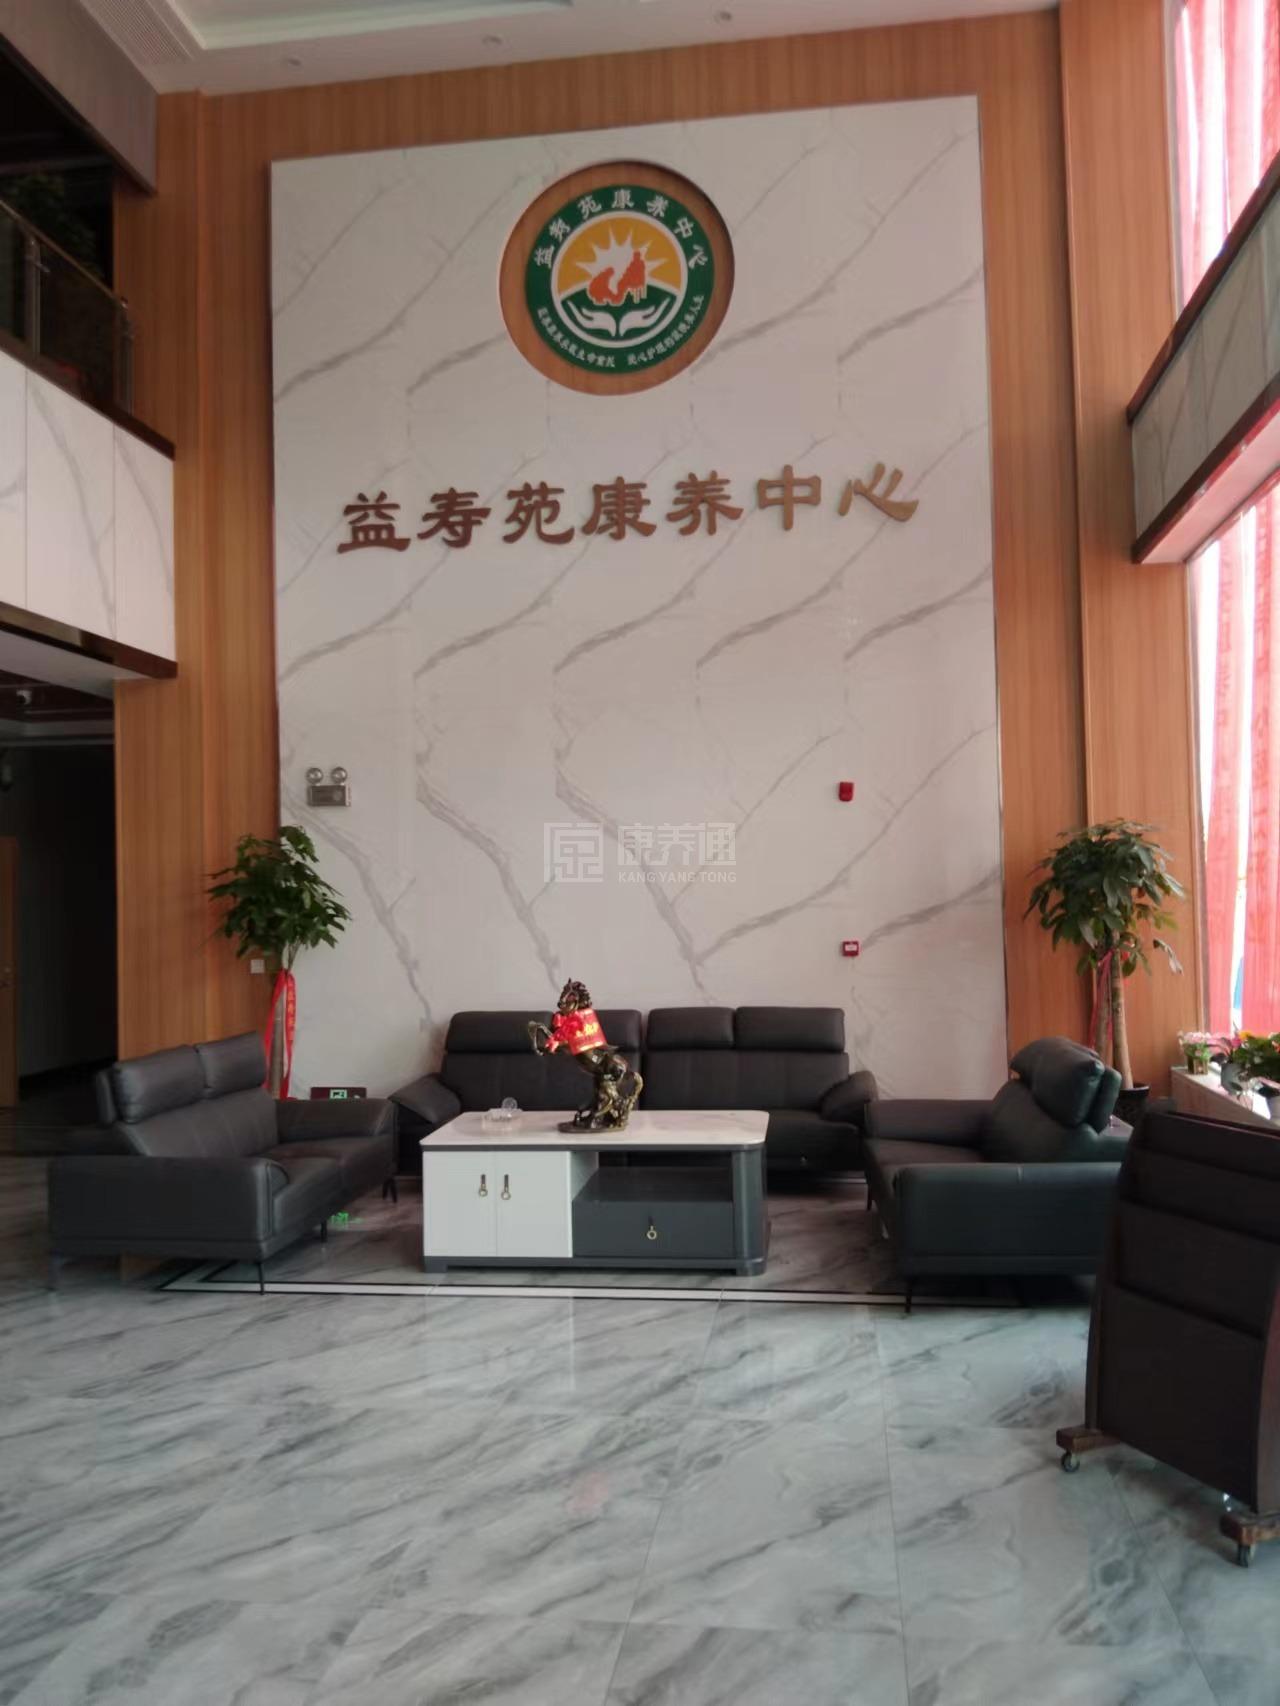 双峰县益寿苑康养中心服务项目图3惬意的环境、感受岁月静好